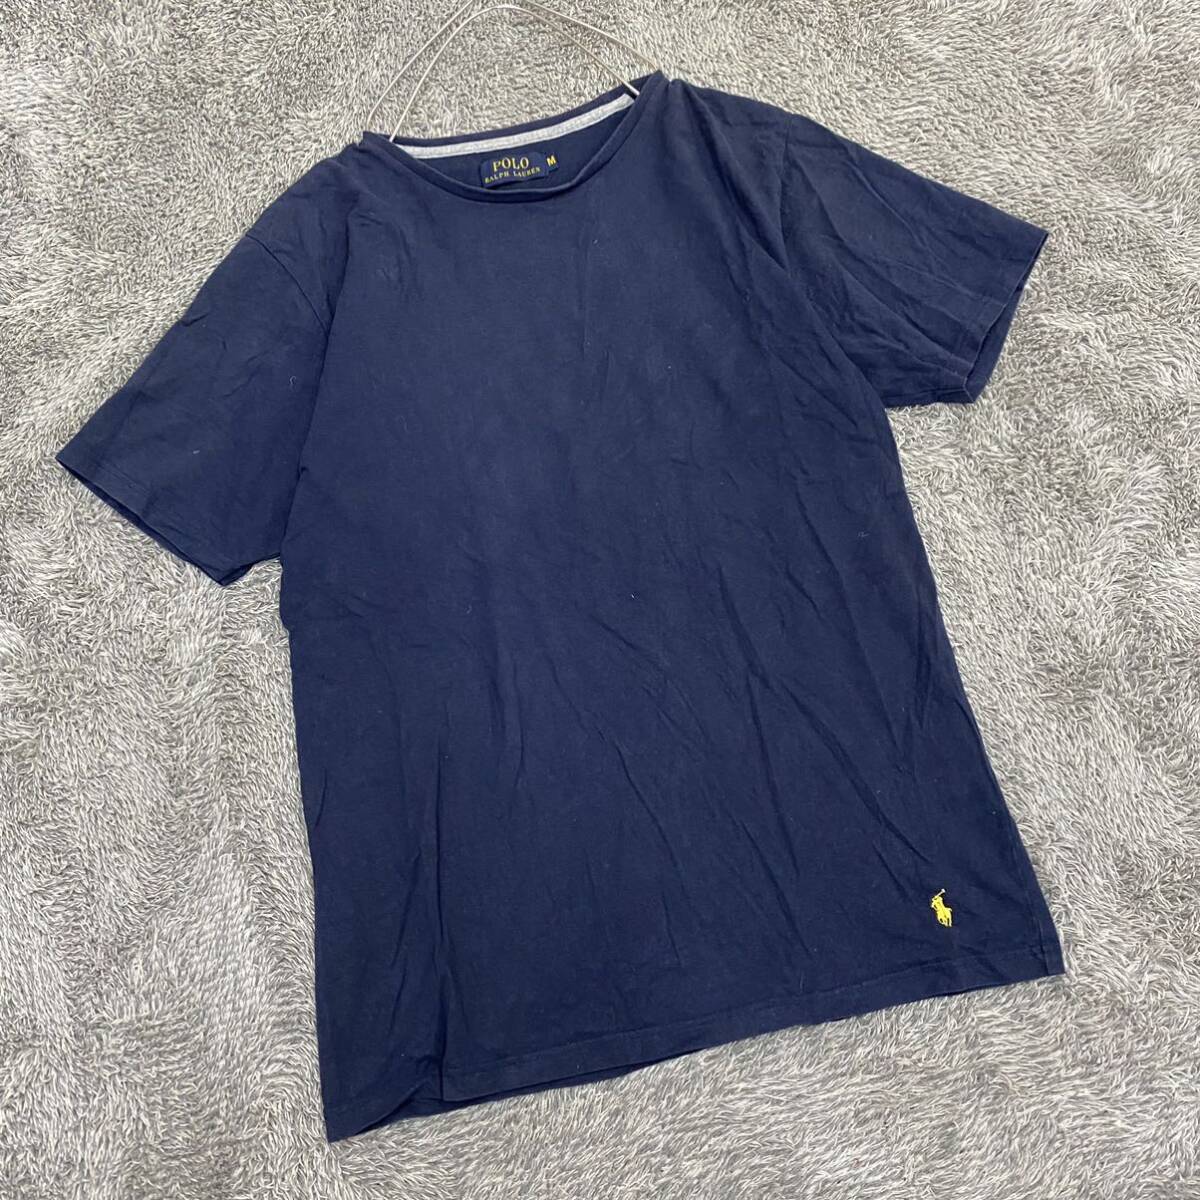 POLO RALPH LAUREN ラルフローレン Tシャツ 半袖カットソー サイズM ネイビー 紺色 メンズ トップス 最落なし （X18）の画像1